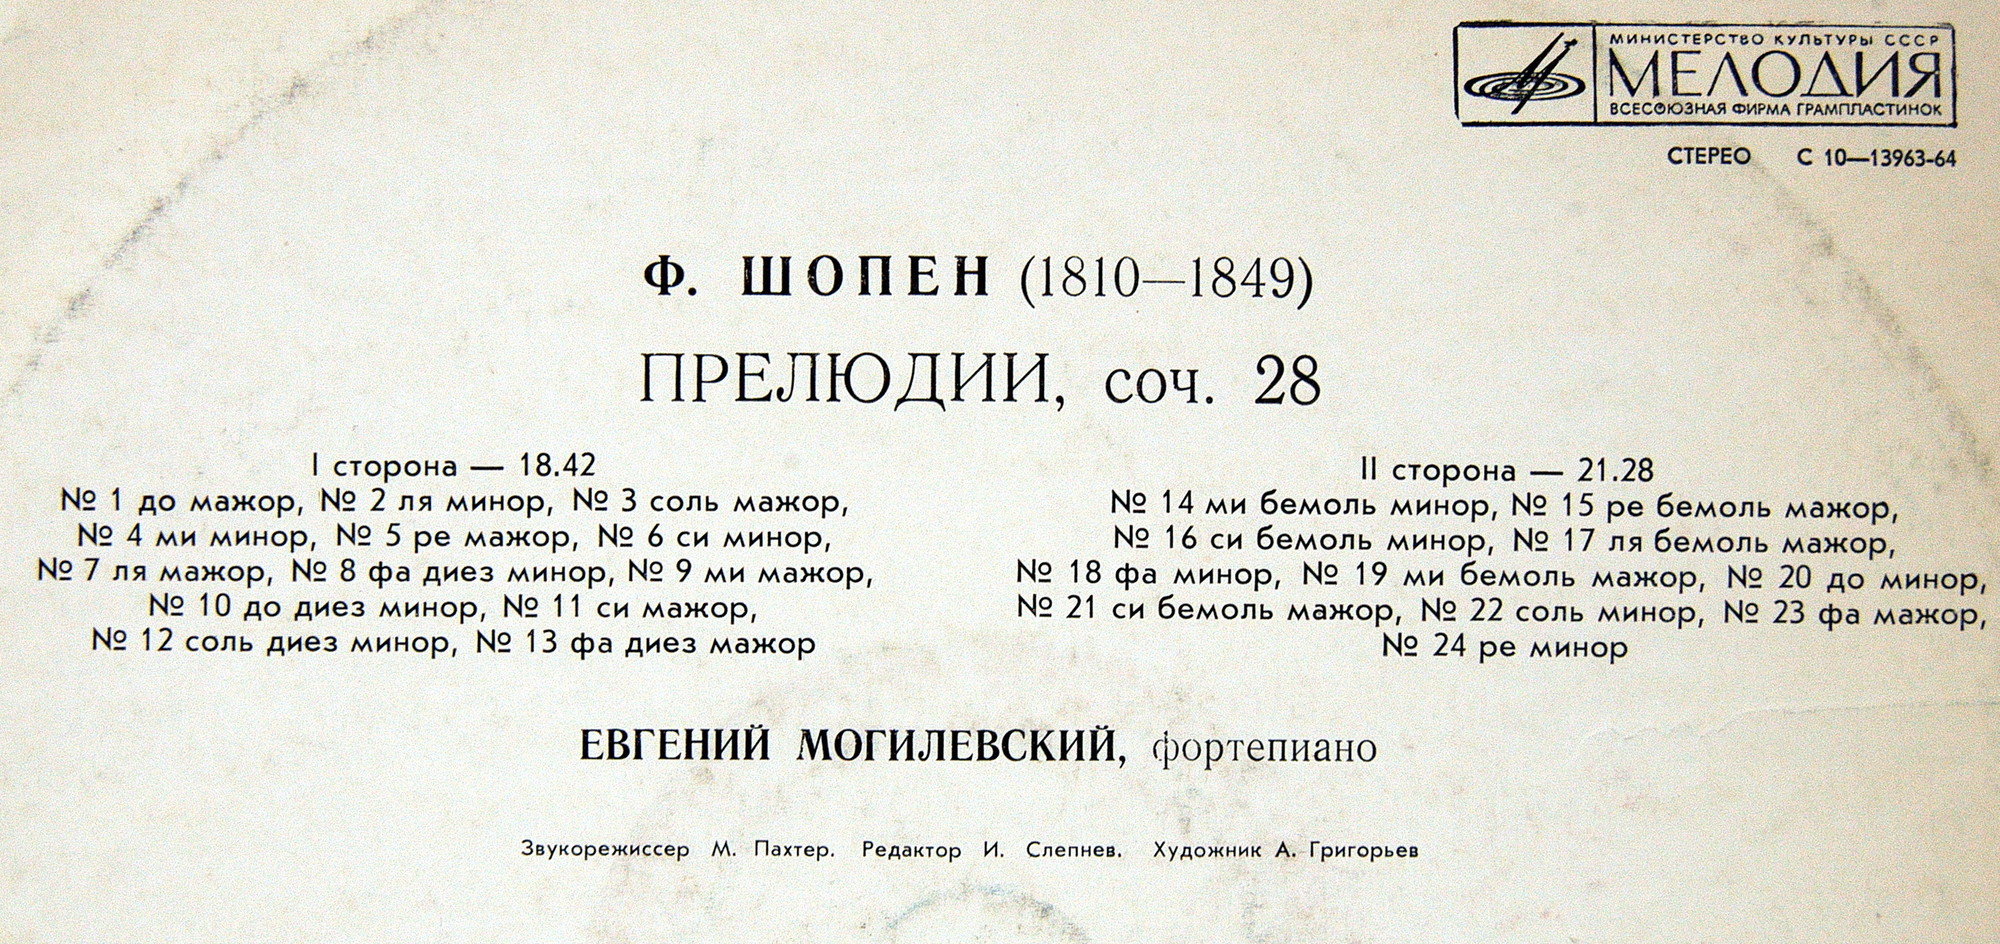 Ф. ШОПЕН: Двадцать четыре прелюдии для ф-но, соч. 28 (Е. Могилевский, ф-но)